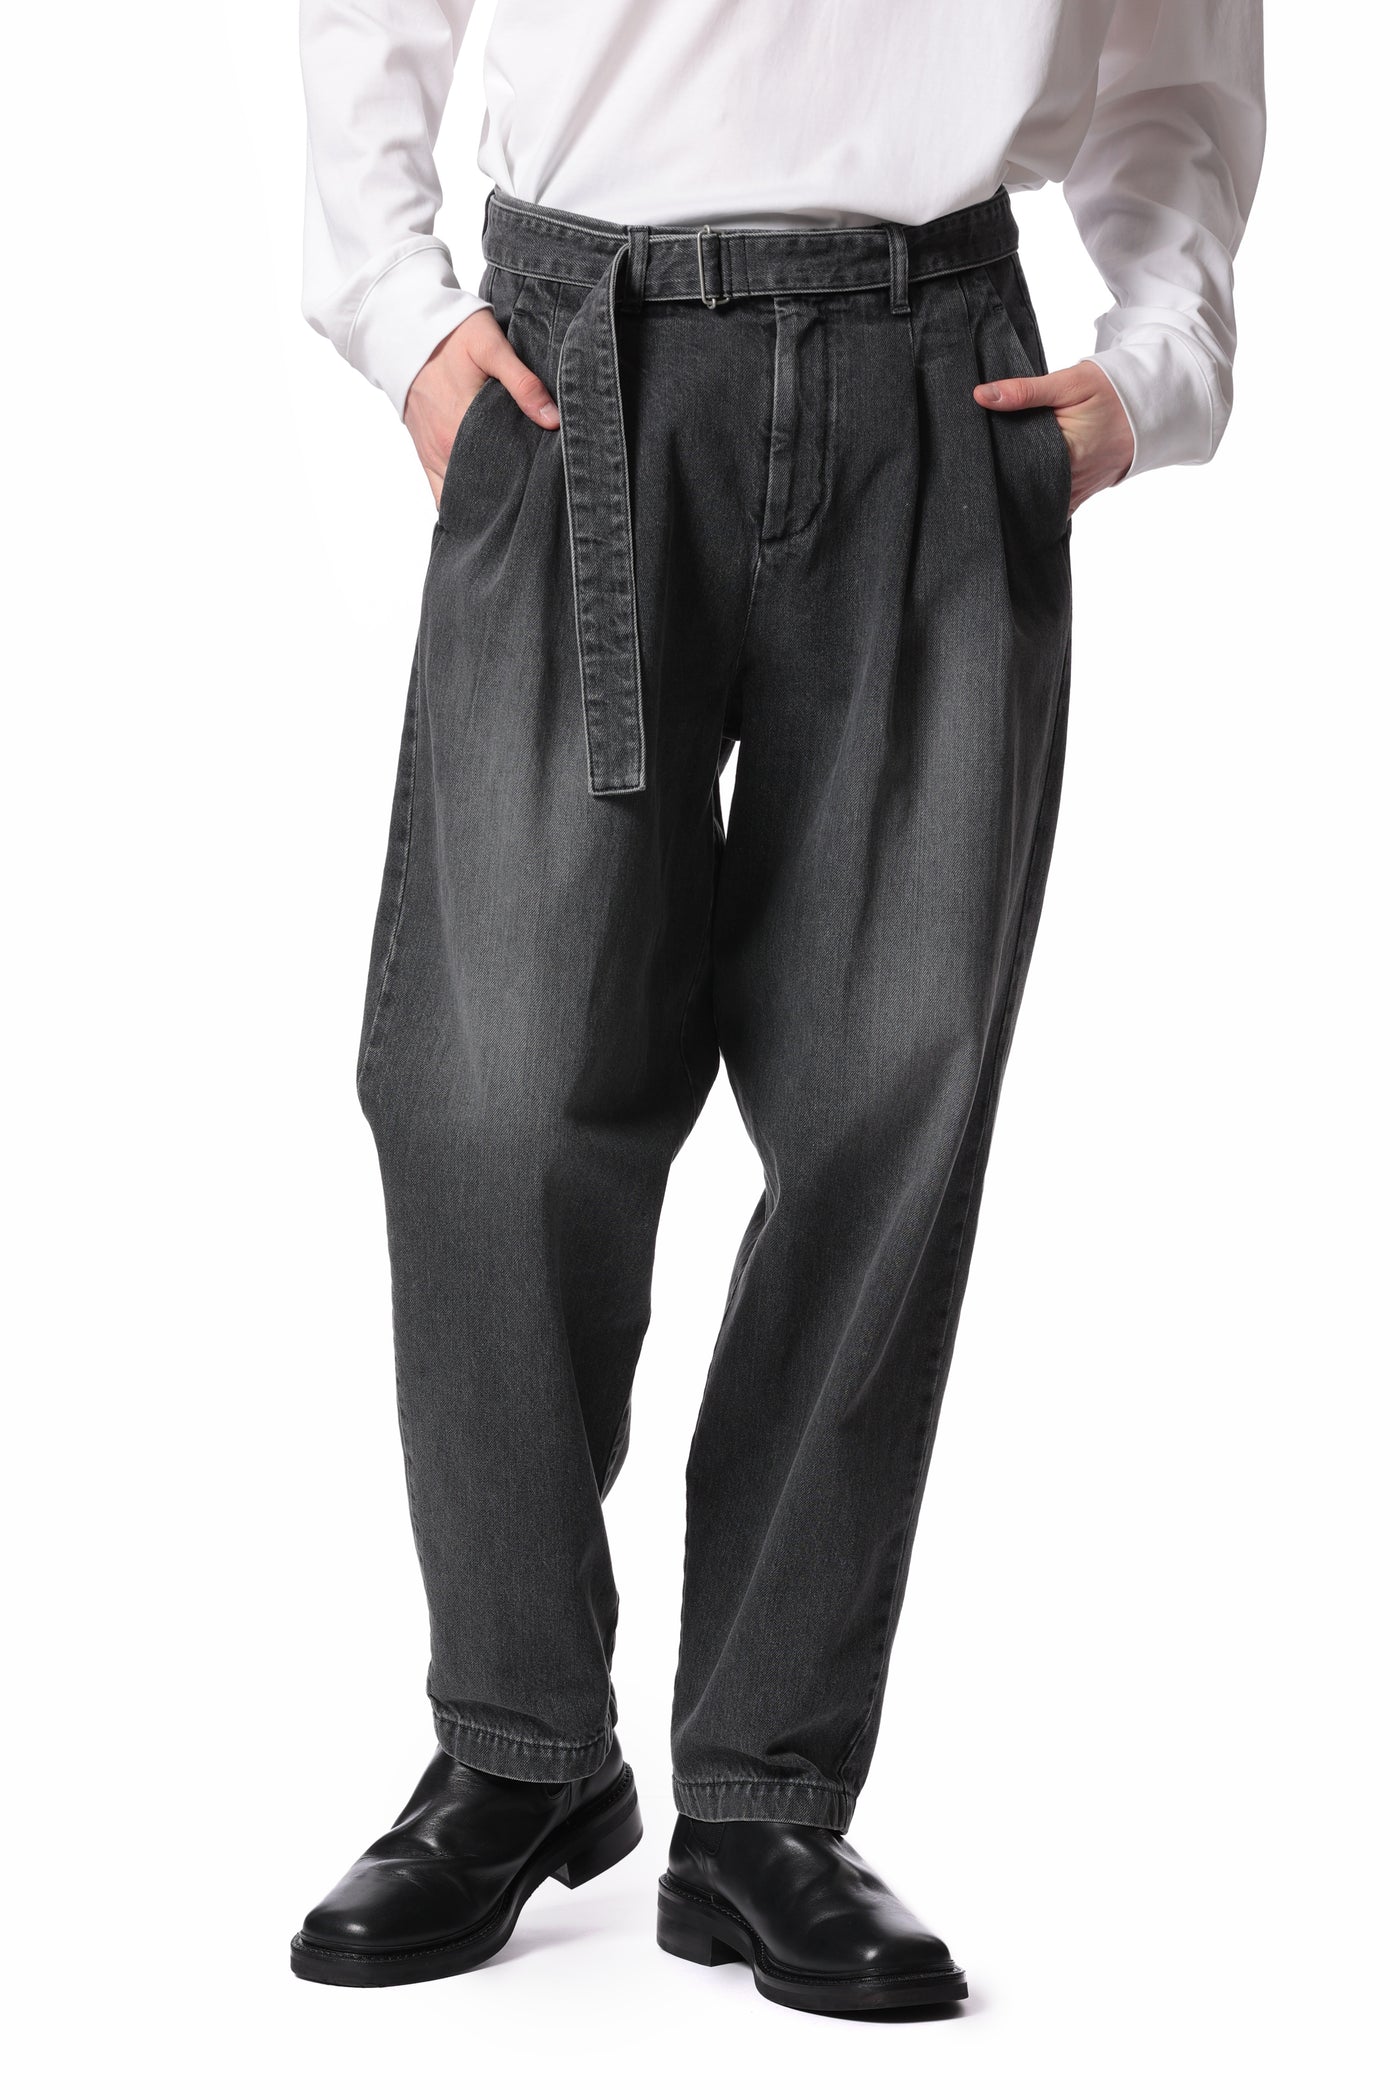 2月发售 AP41-059 11oz 牛仔布 2 褶宽锥形裤配腰带